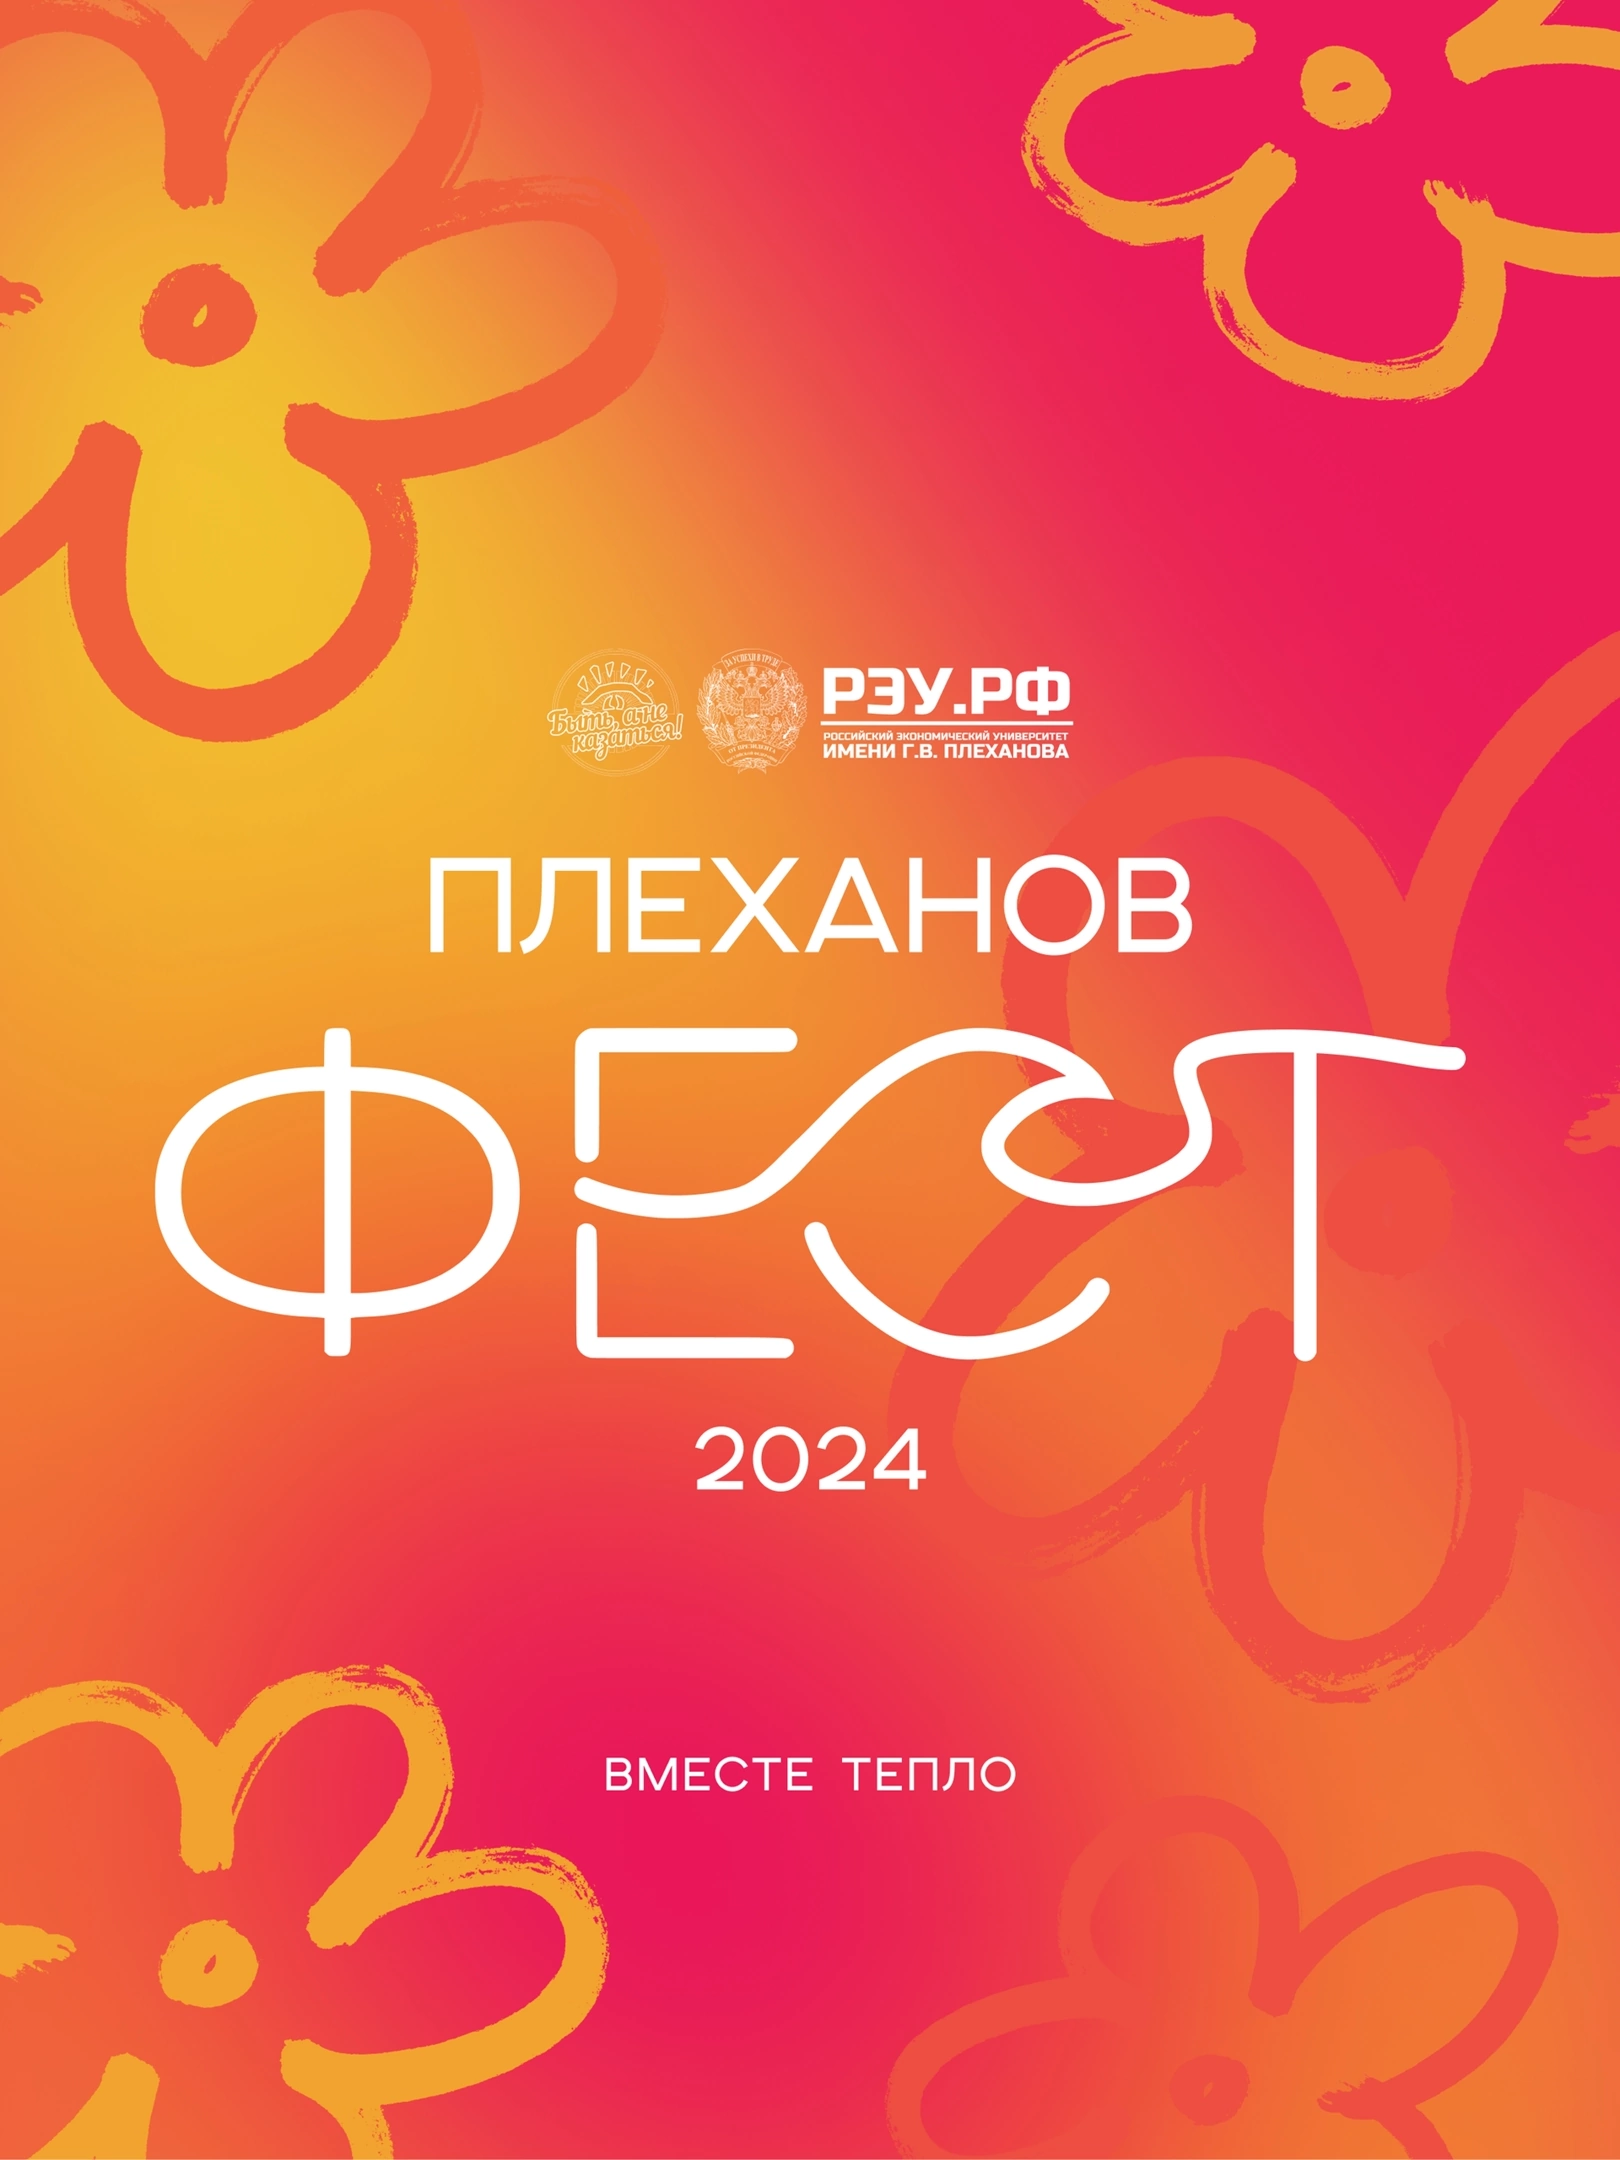 Плеханов Фест 2024